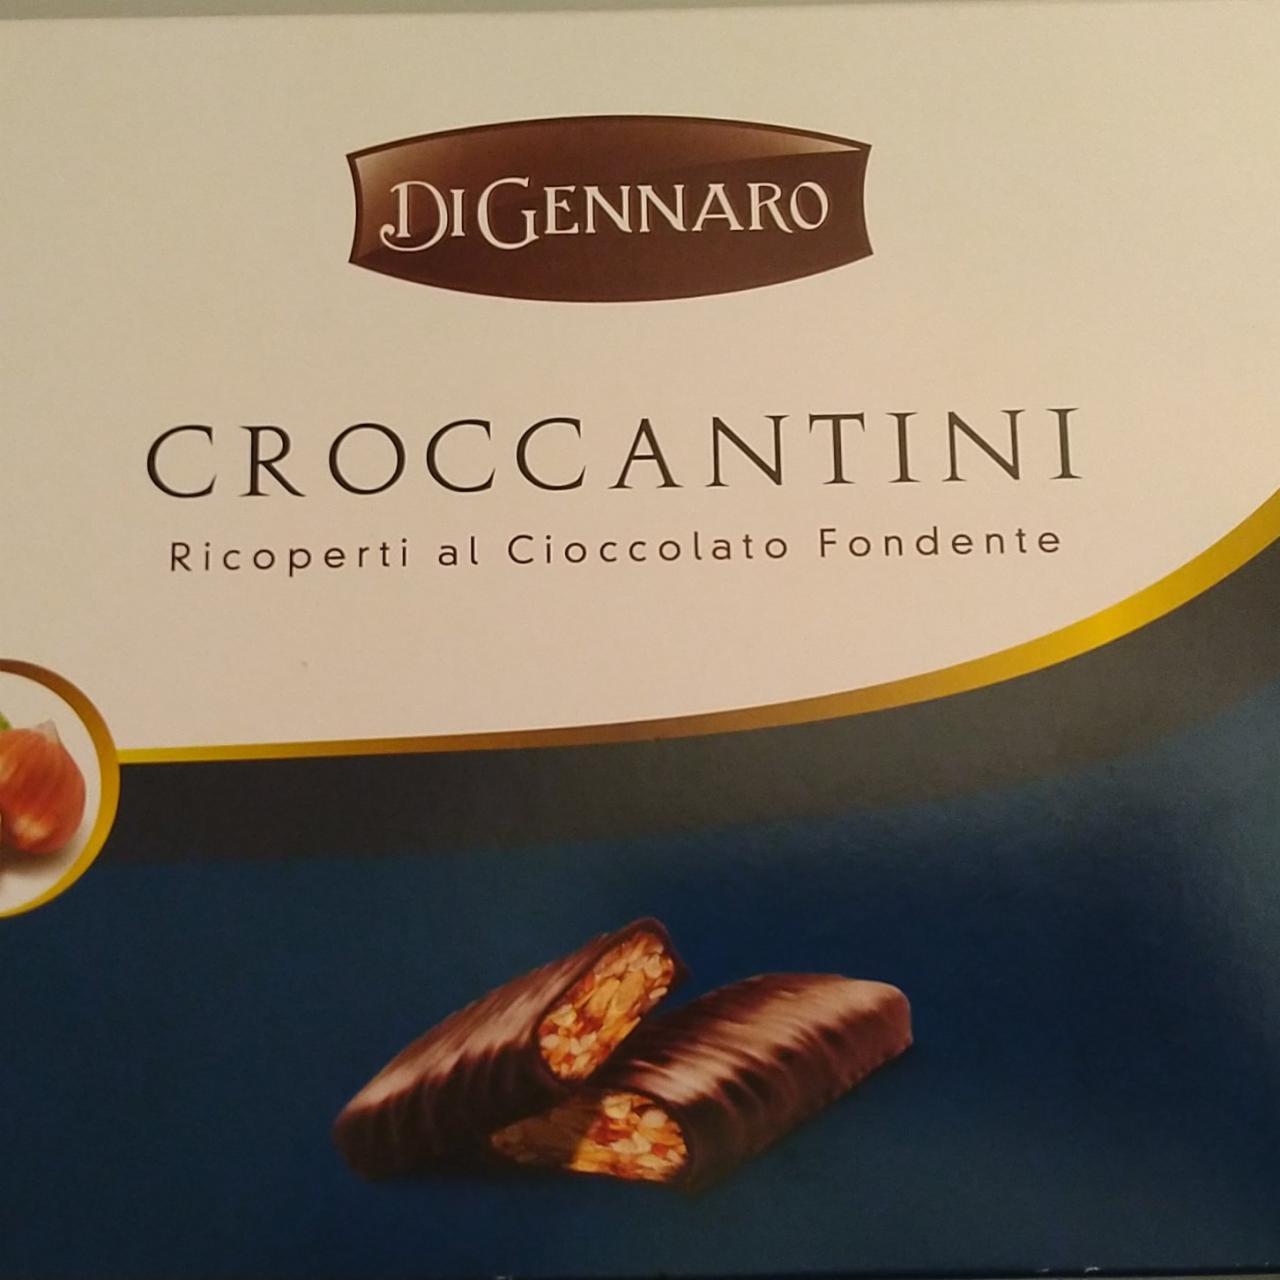 Fotografie - Croccantini Ricoperti al Cioccolato Fondente DiGennaro